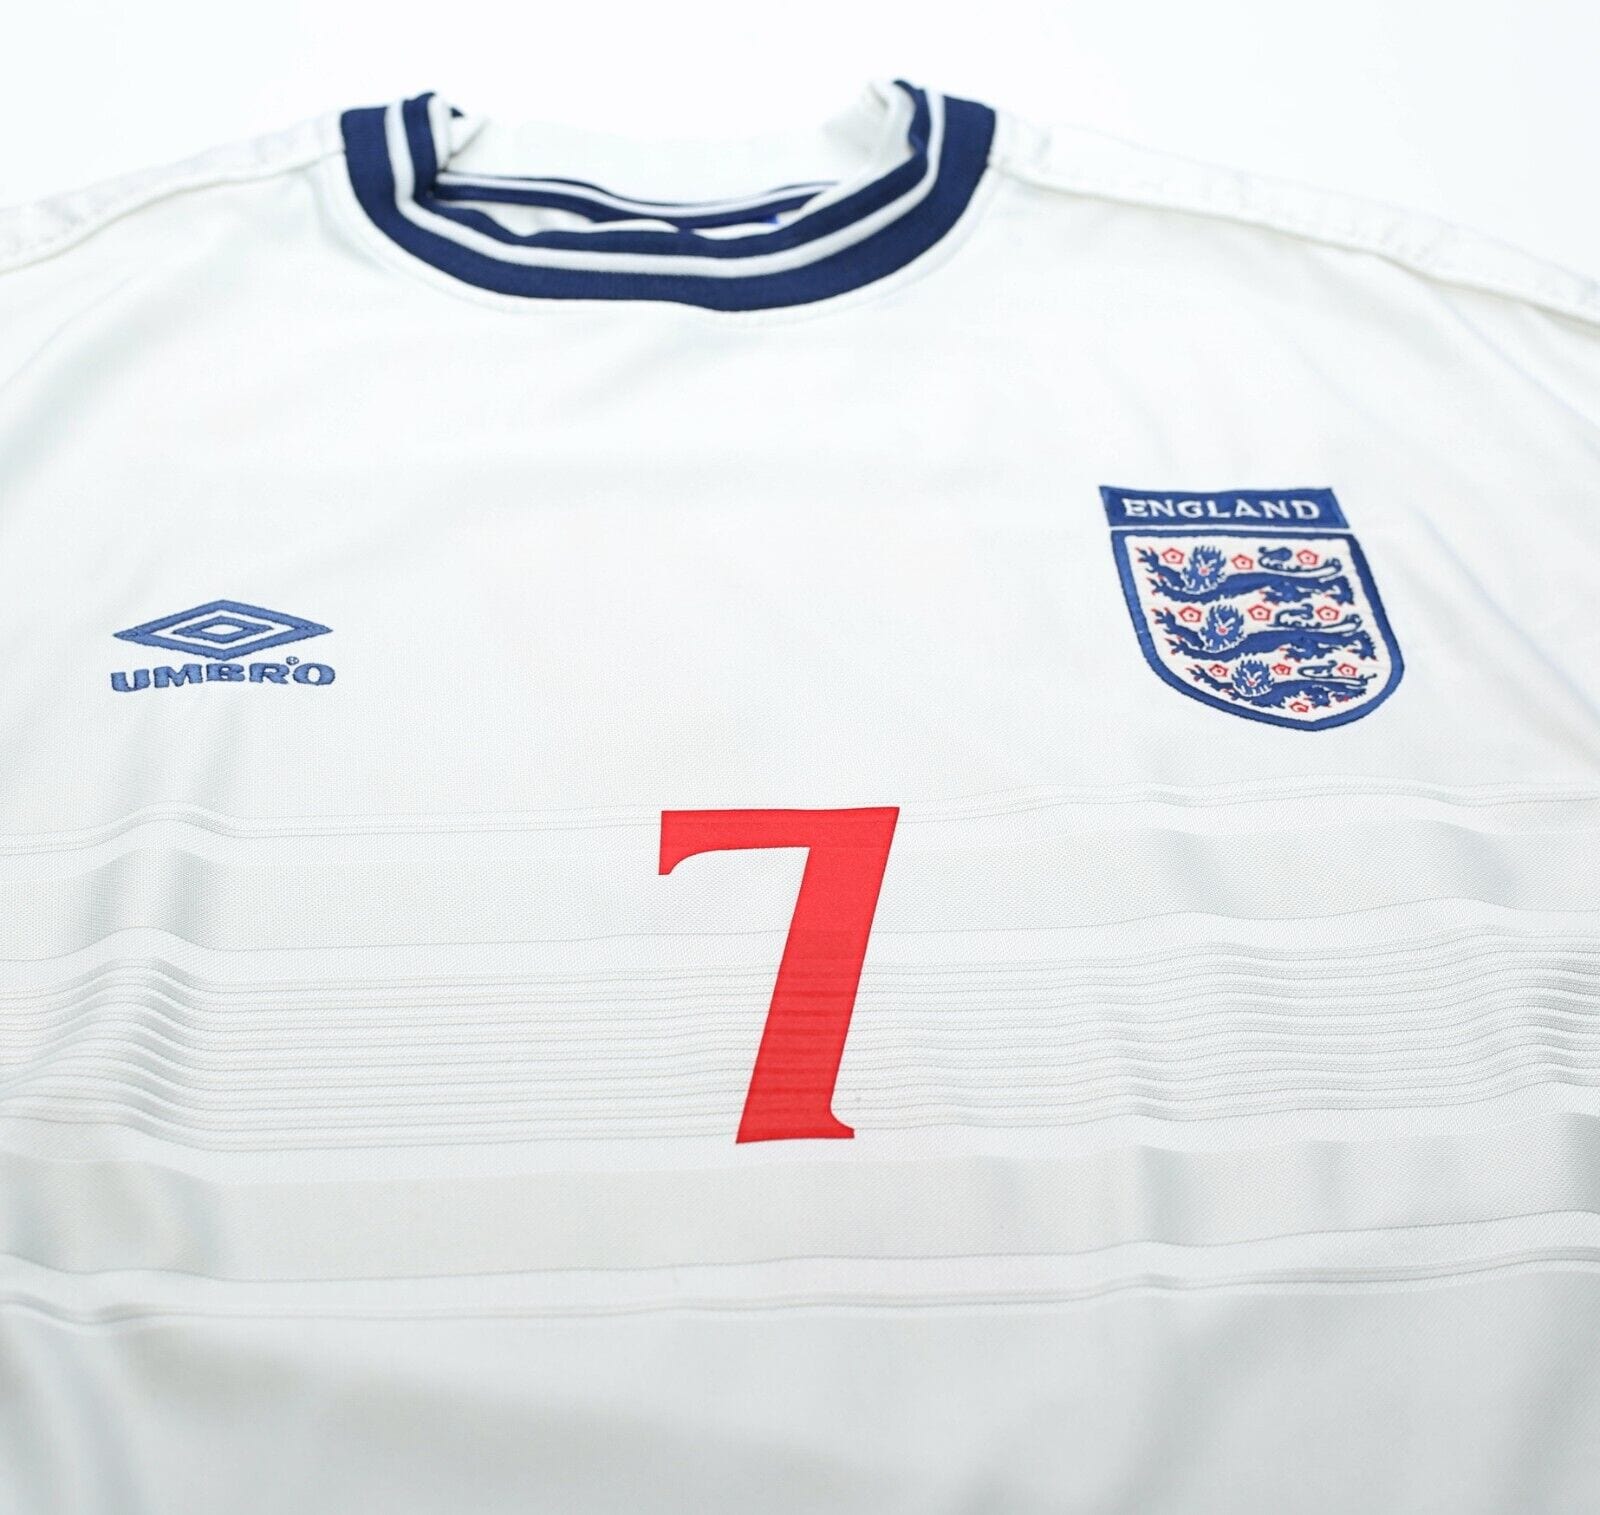 1999/01 BECKHAM #7 England Vintage Umbro Home Football Shirt (M) Euro 2000